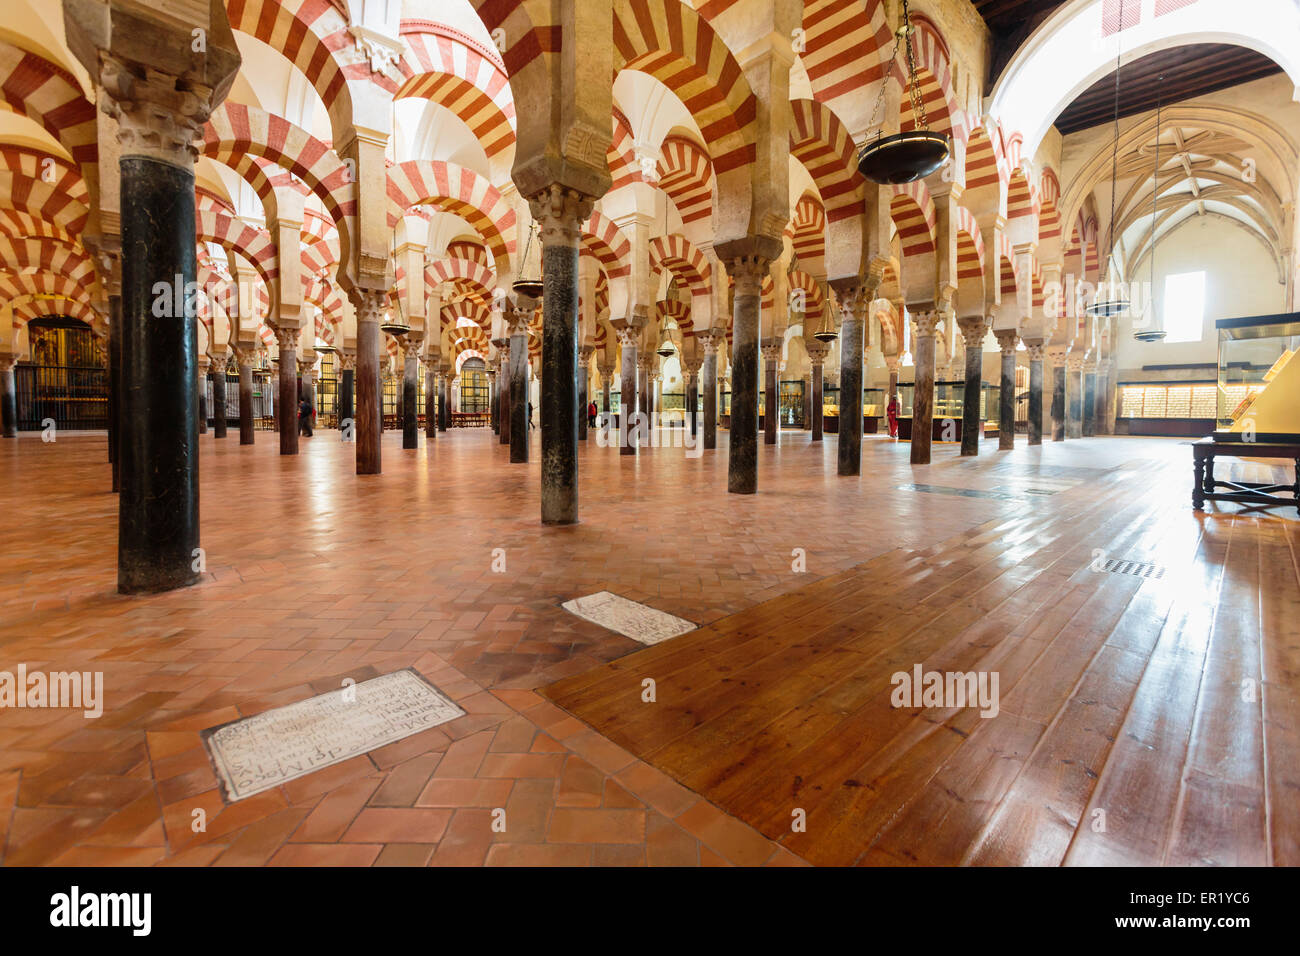 Cordoba, in provincia di Cordoba, Andalusia, Spagna meridionale. Interno della Grande Moschea, la Mezquita. Foto Stock